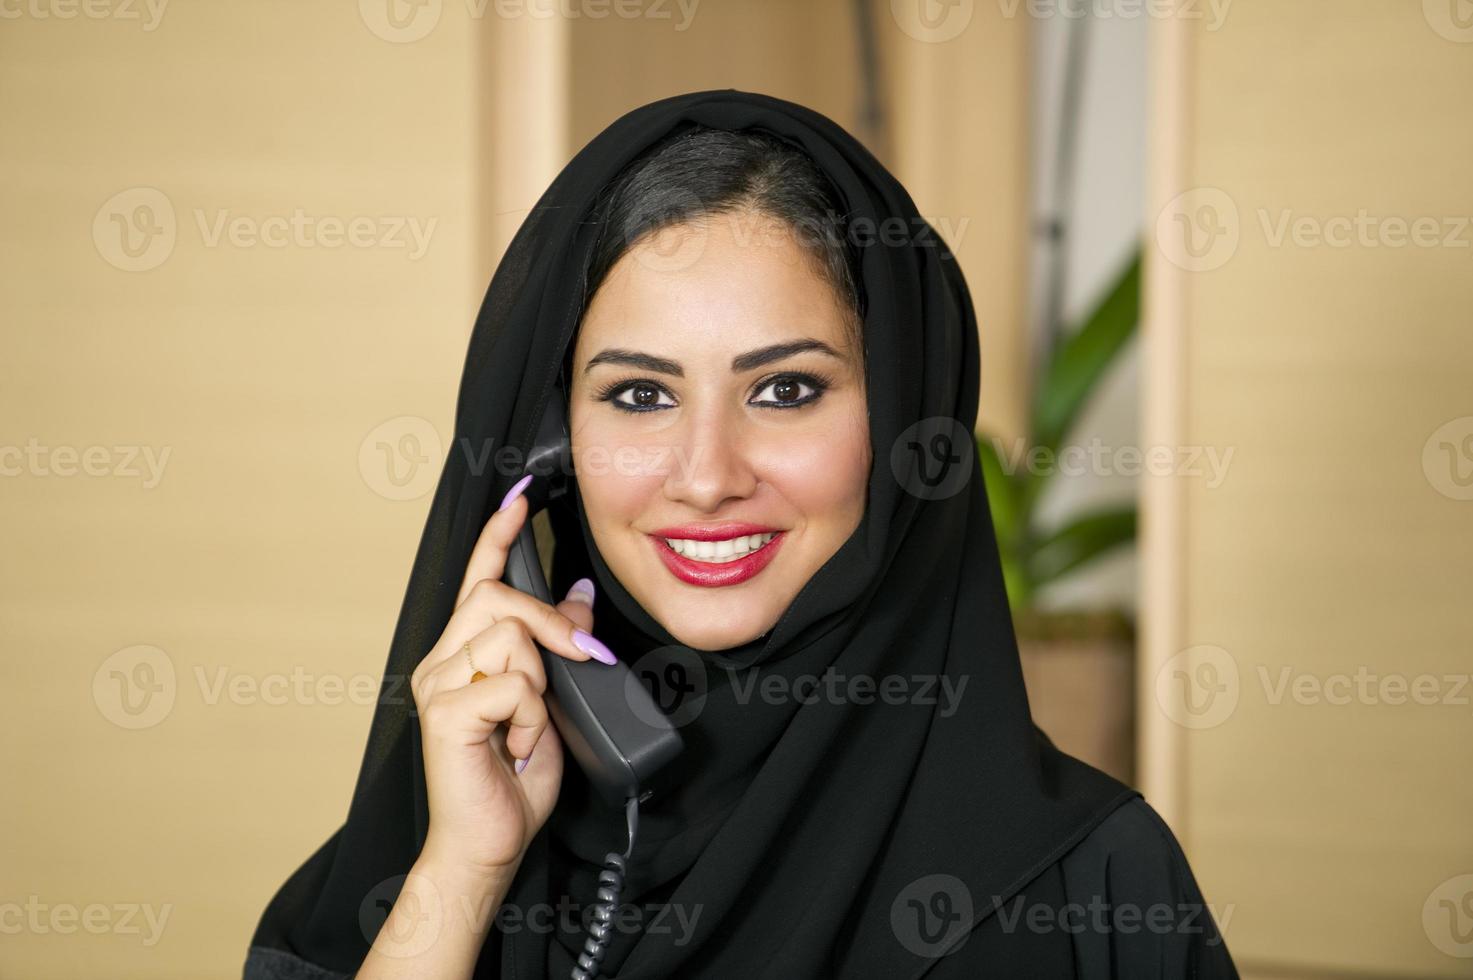 representante de servicio al cliente árabe foto